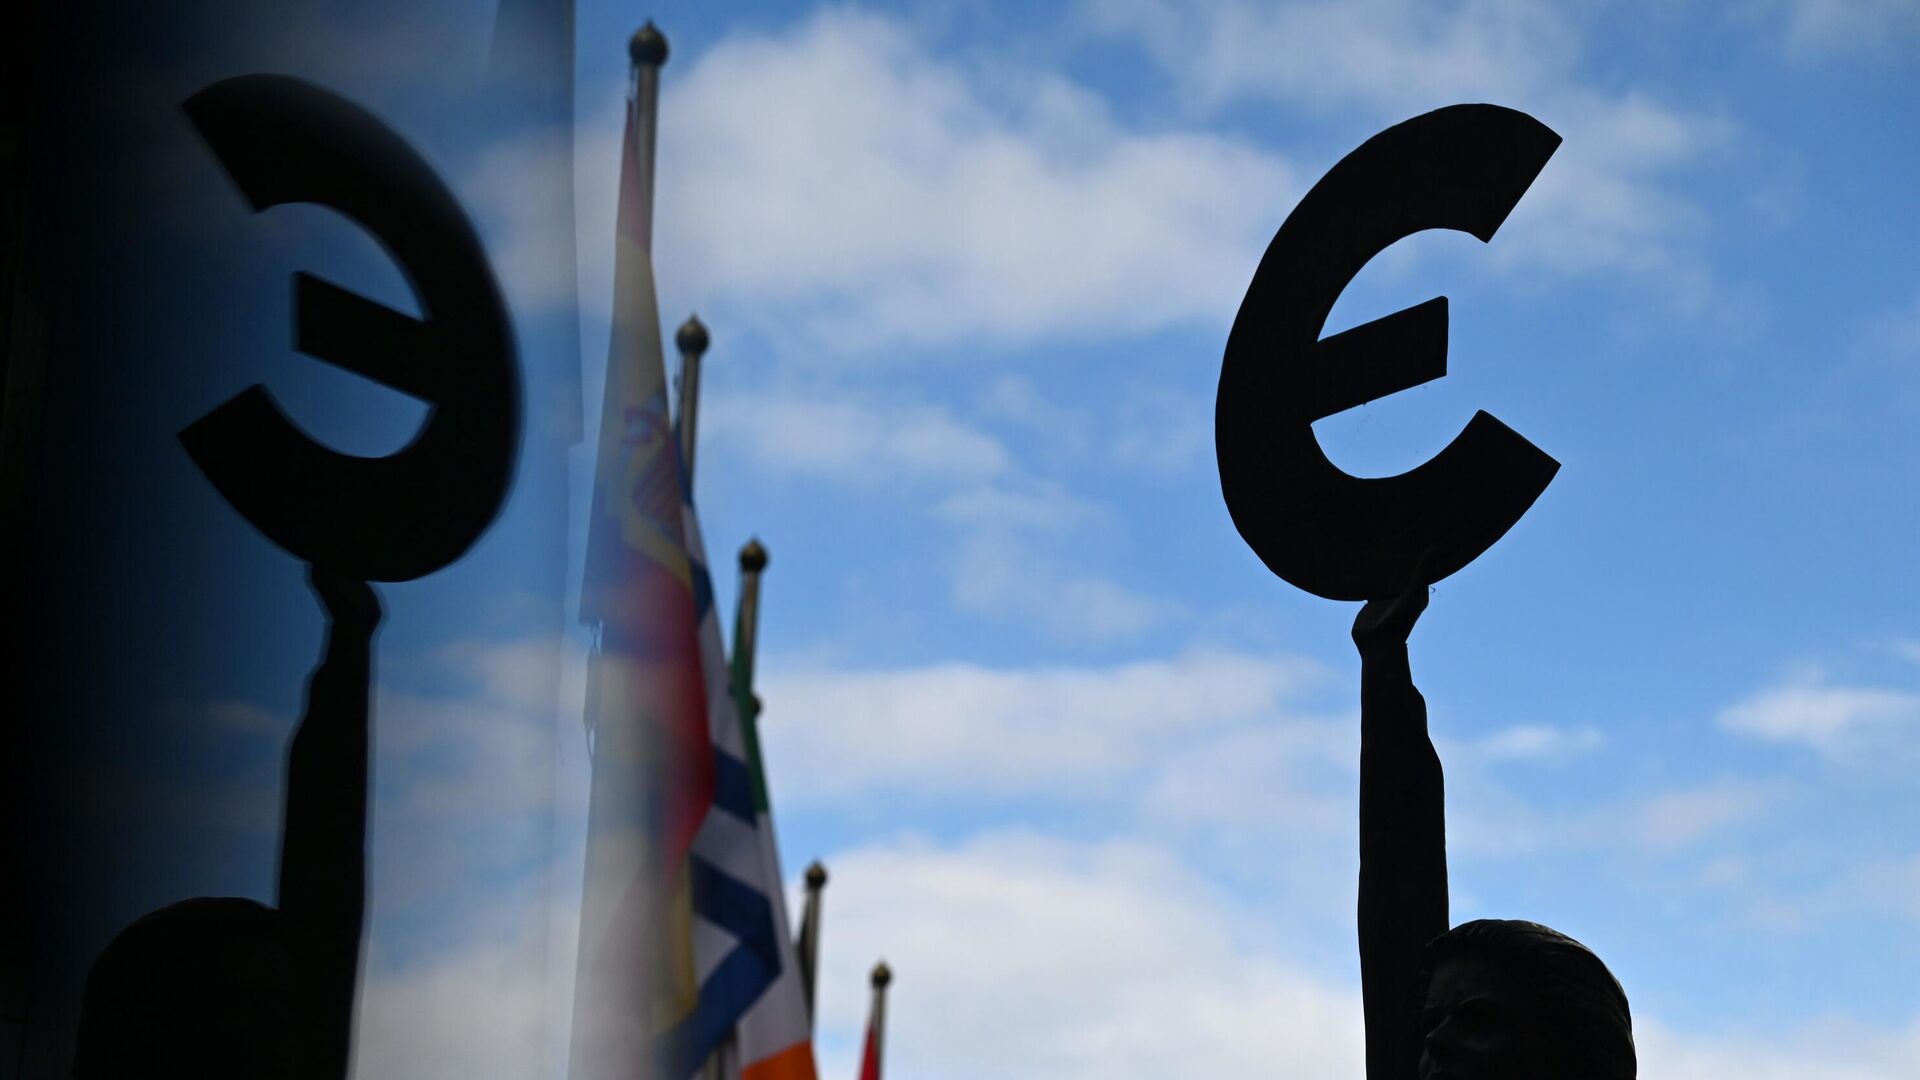 Памятник-скульптура знаку Евро у здания штаб-квартиры Европейского парламента в Брюсселе - РИА Новости, 1920, 27.12.2022